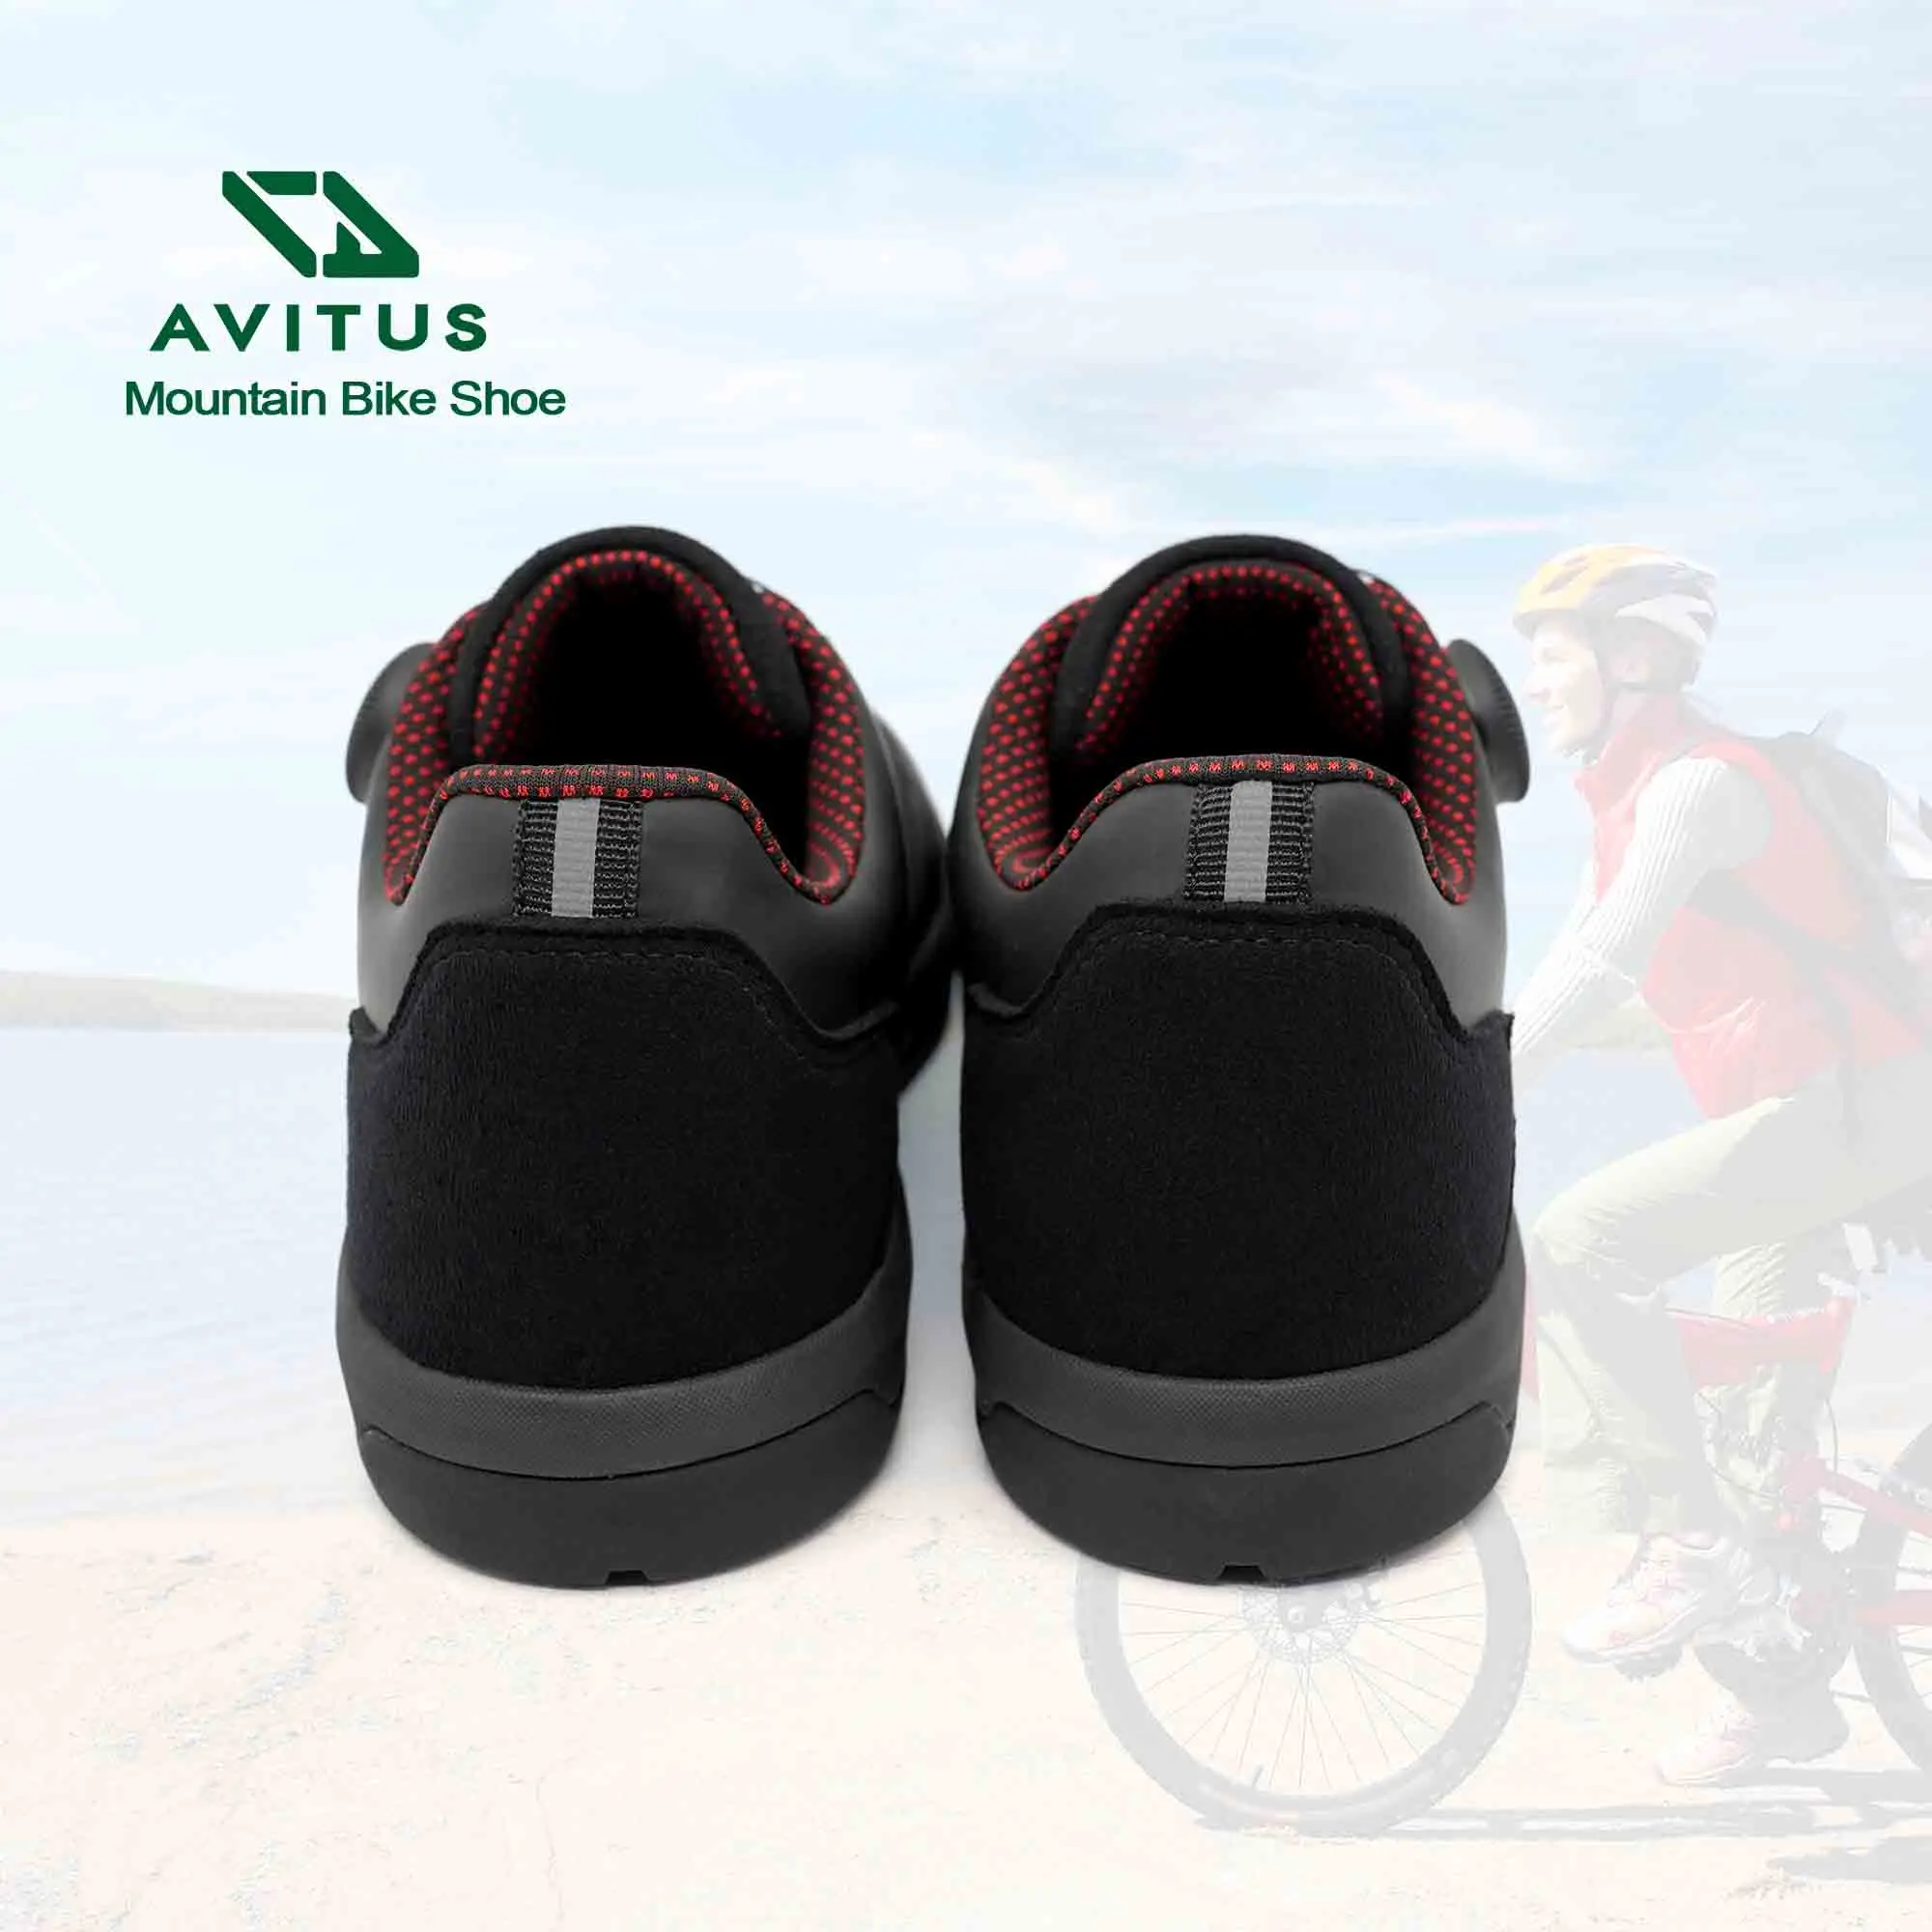 AVITUS továrna zapatillas MTB bota plochý pedál guma podrážka pro enduro svobodné jet DH vláčet jízdní muži tenisky bicyle cyklistika boty